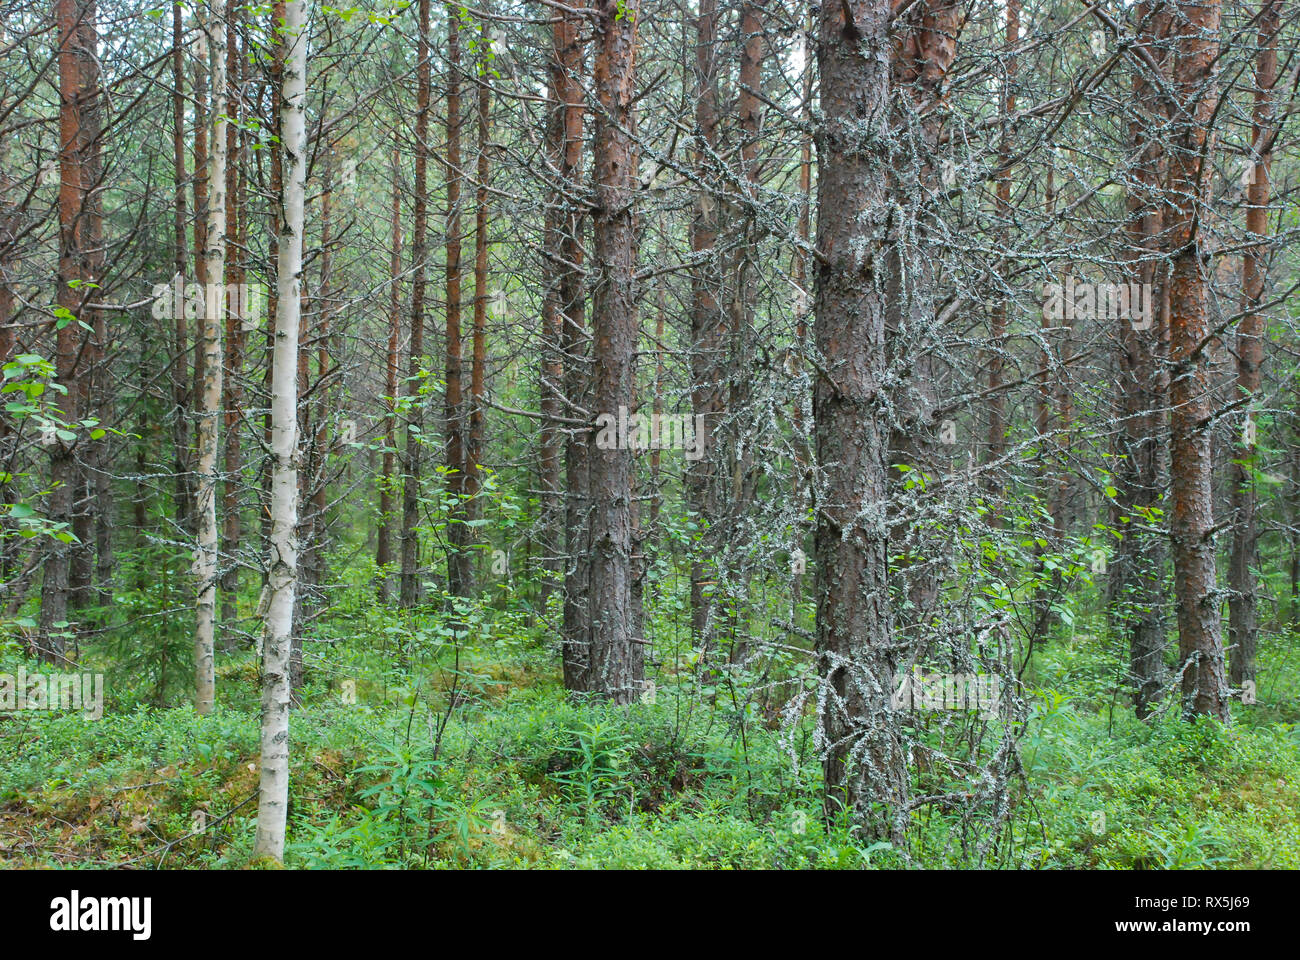 La taïga (forêt boréale), biome paysage sauvage naturel dans le nord-est de la Finlande, de l'Europe, avec des conifères, comme les pins et sapins. Banque D'Images